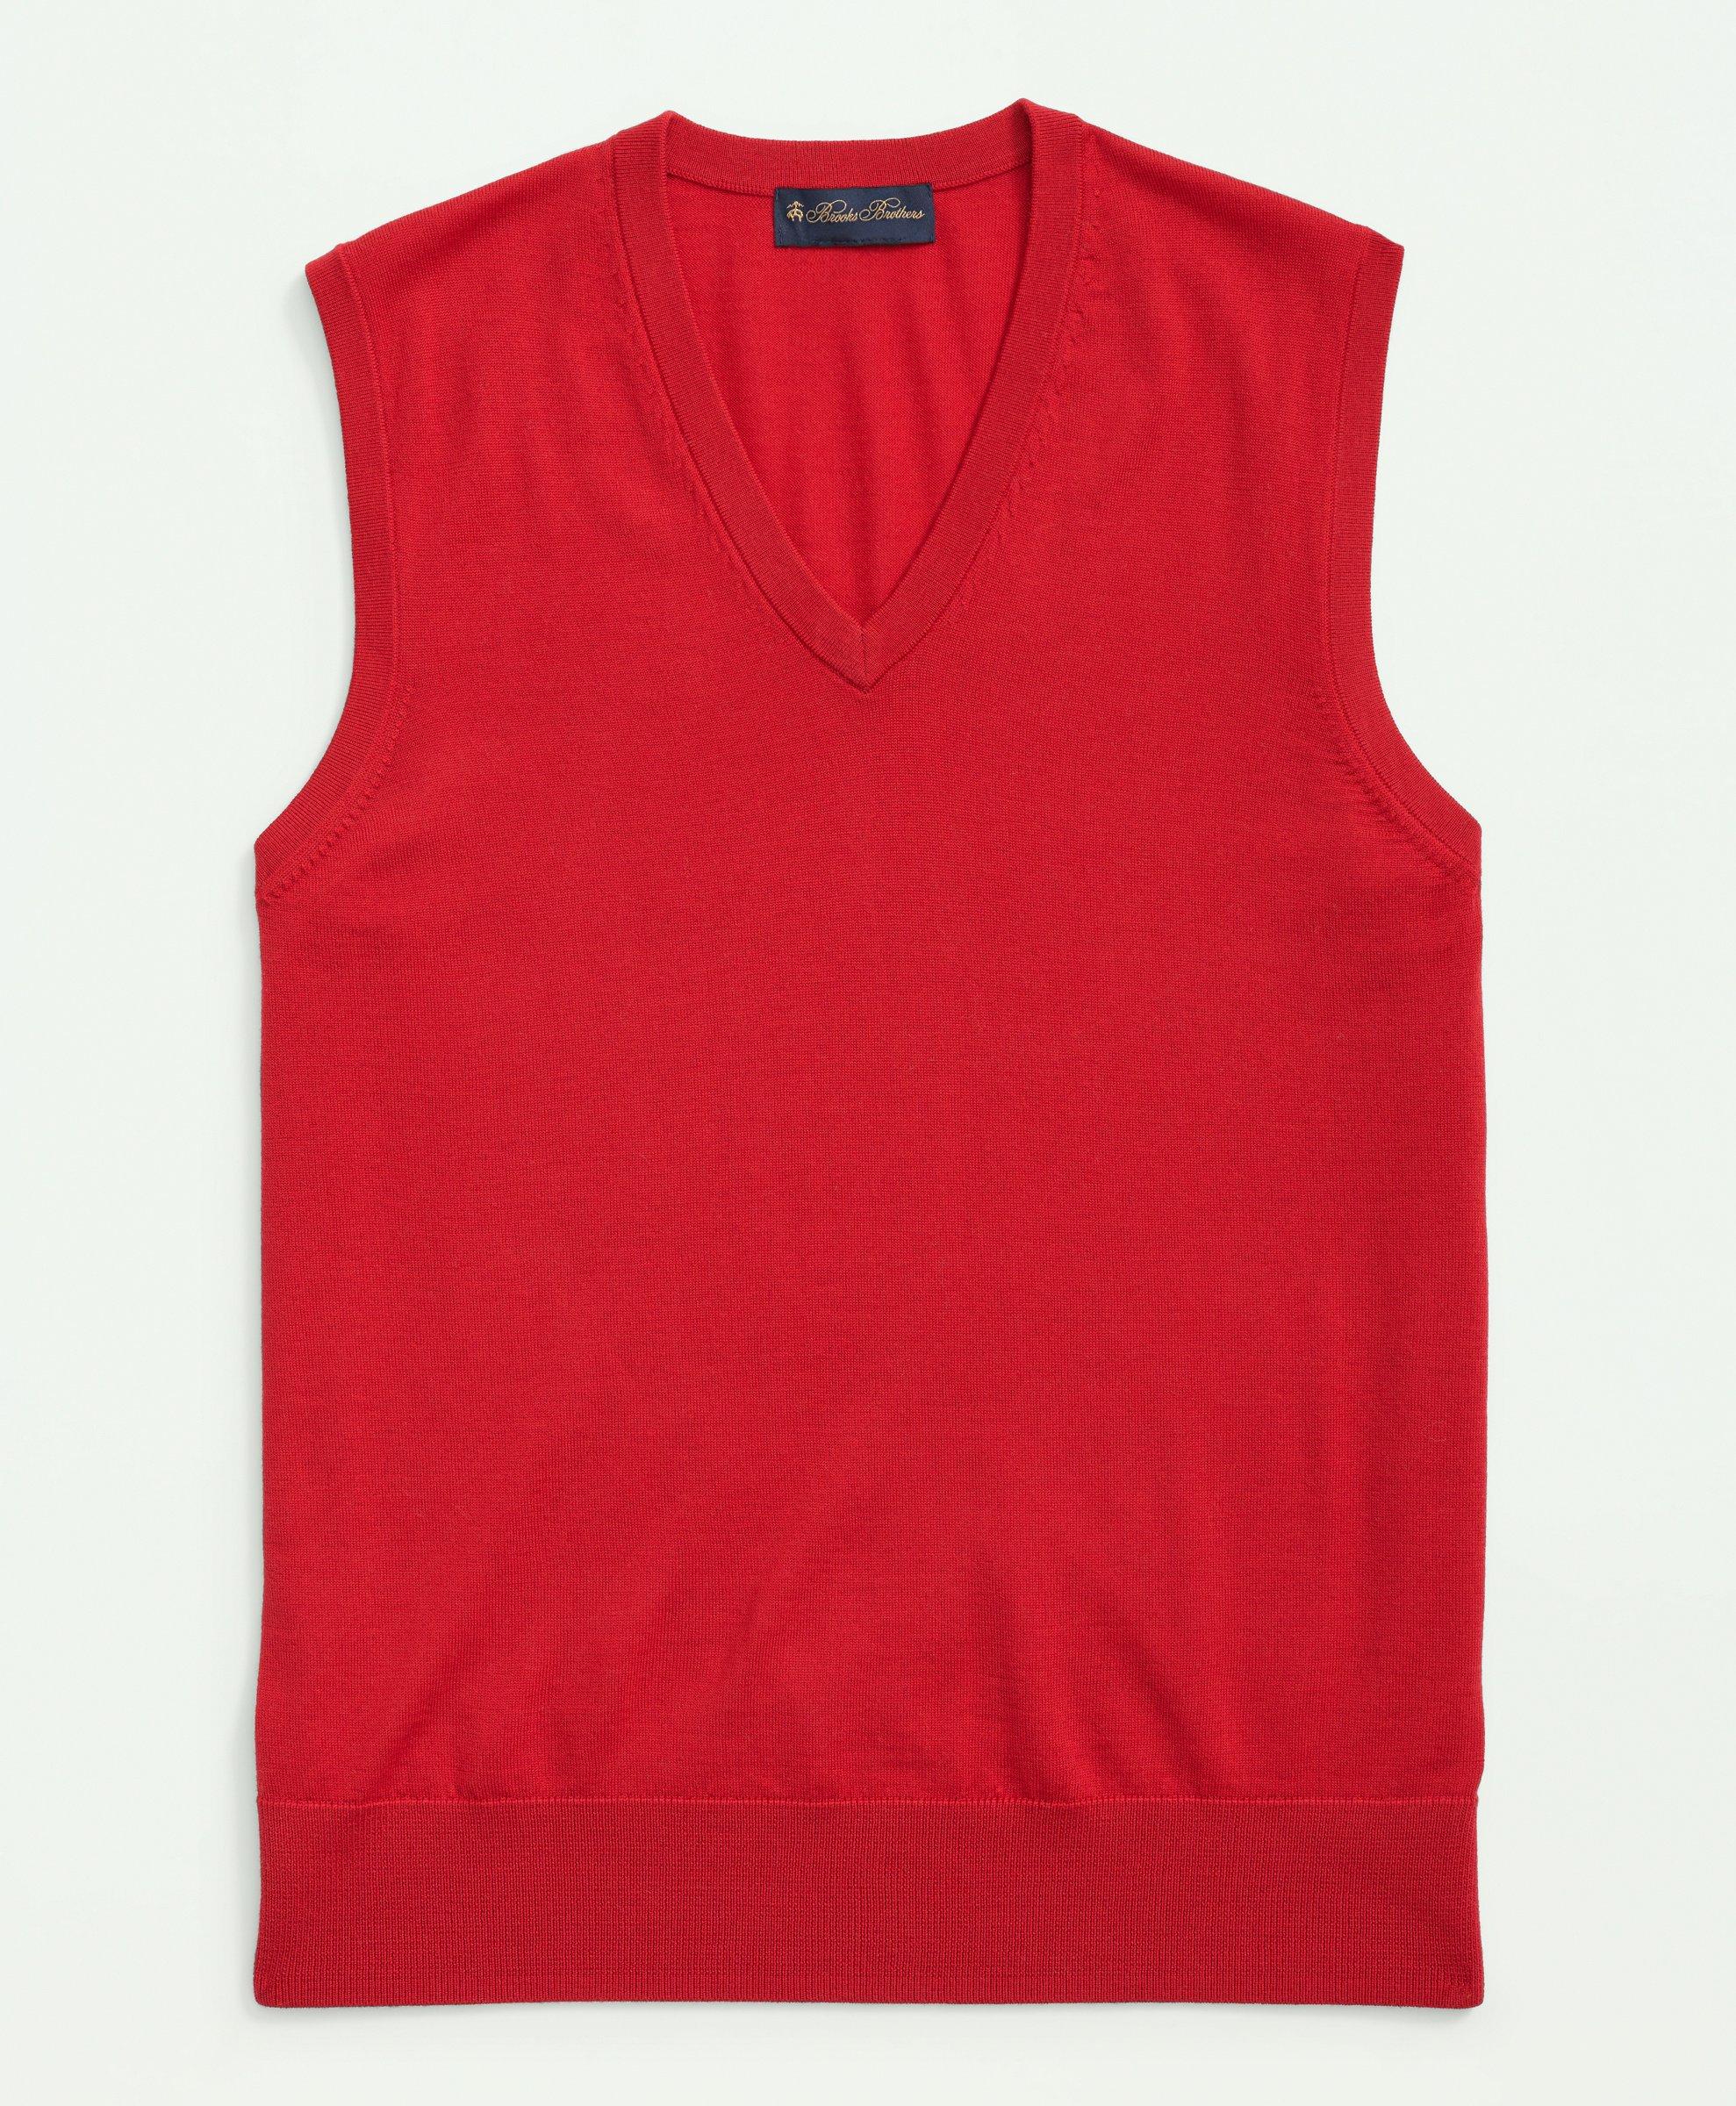 Men's Sleeveless Woollen Sweater Vest, Jade Green